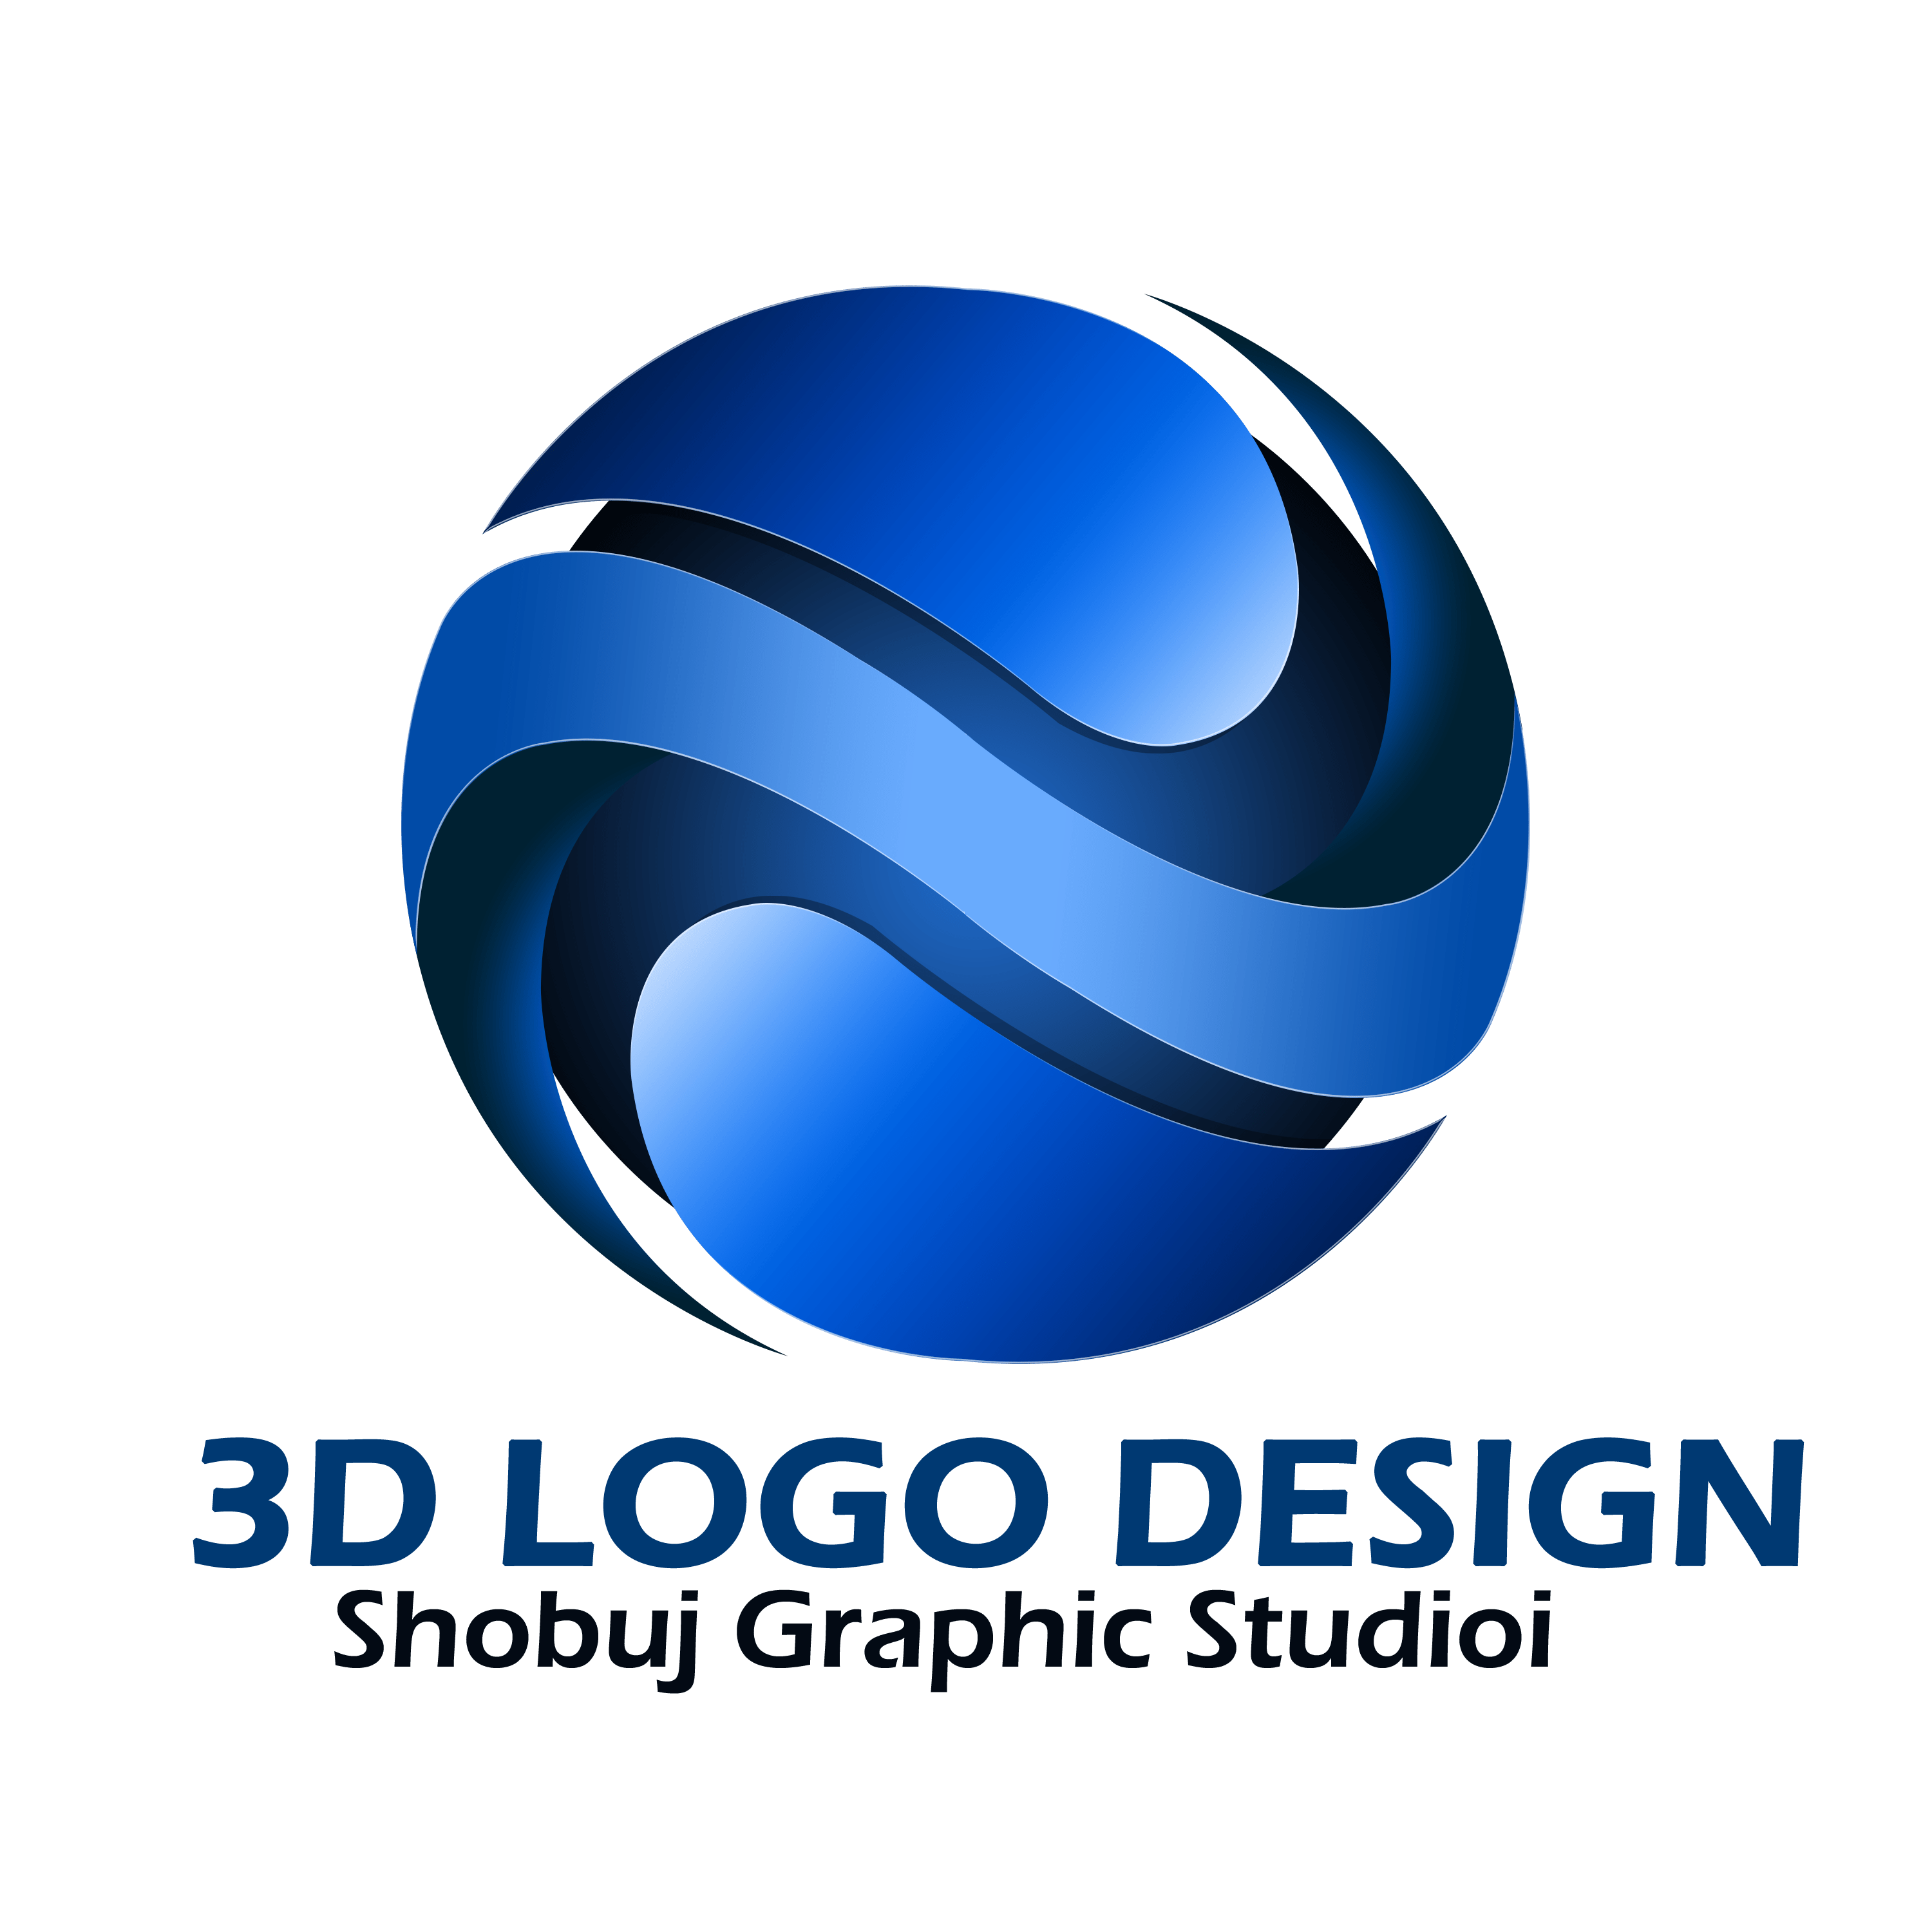 3D Logos - Logo Templates, 3D logo Makers and logo design